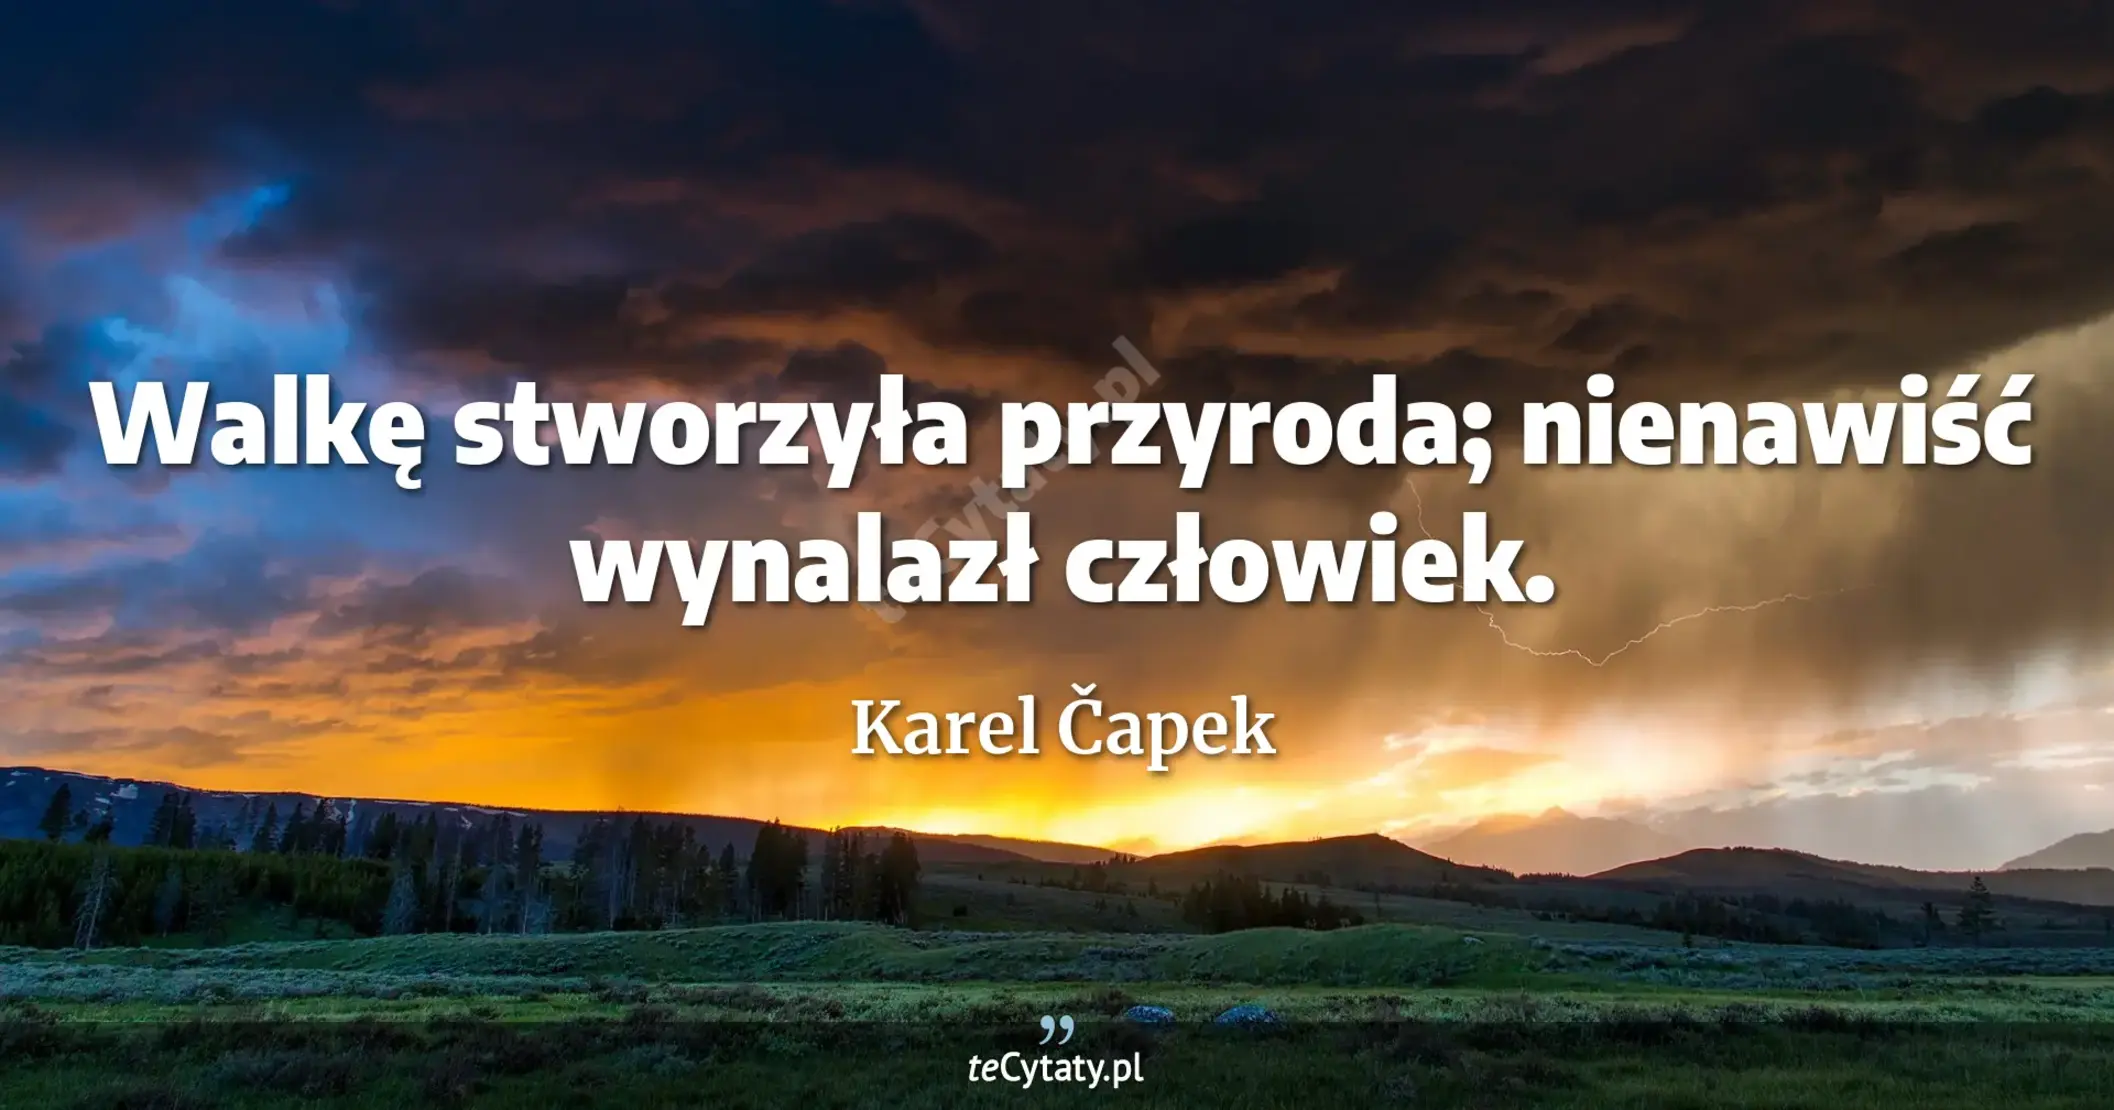 Walkę stworzyła przyroda; nienawiść wynalazł człowiek. - Karel Čapek